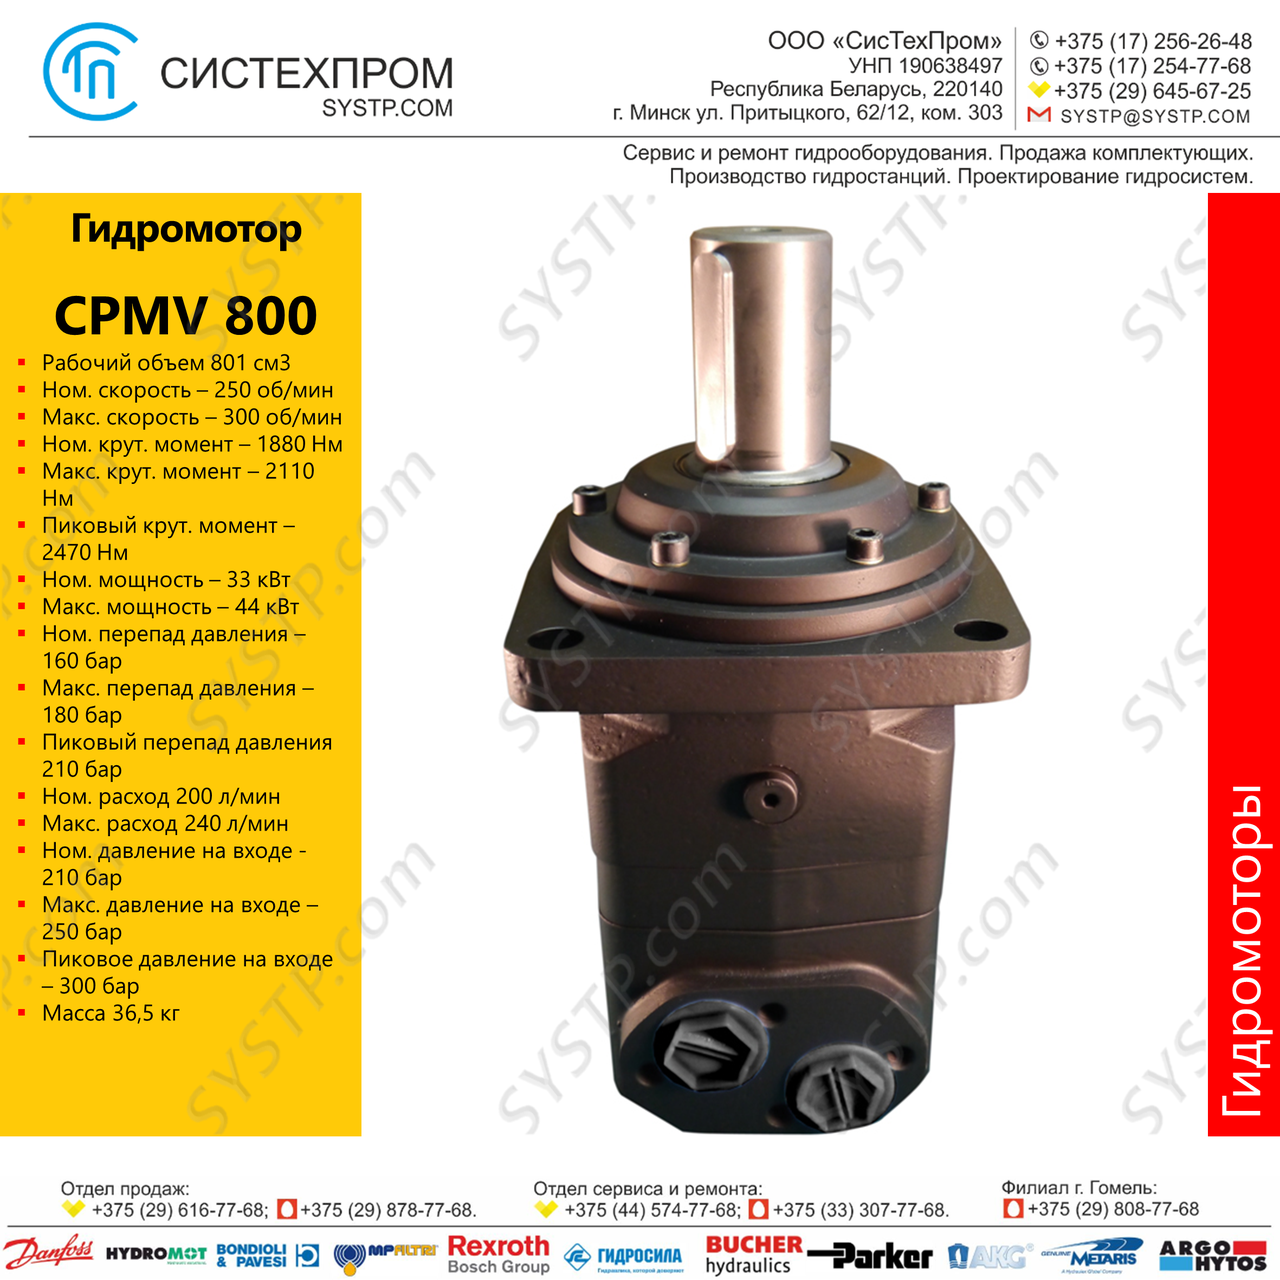 Гидромотор CPMV 800, фото 1